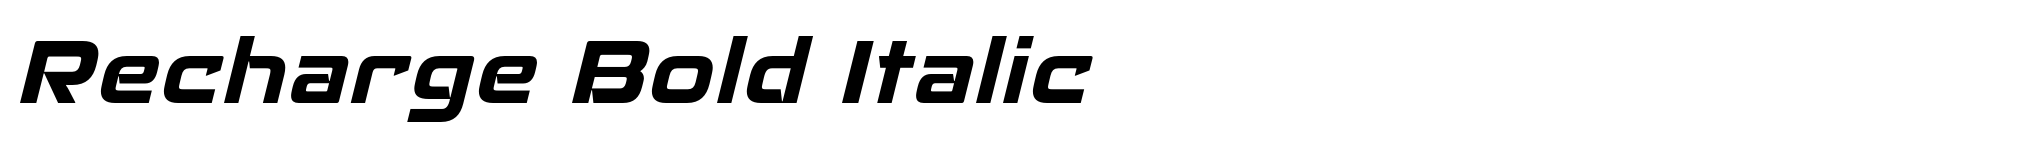 Recharge Bold Italic image